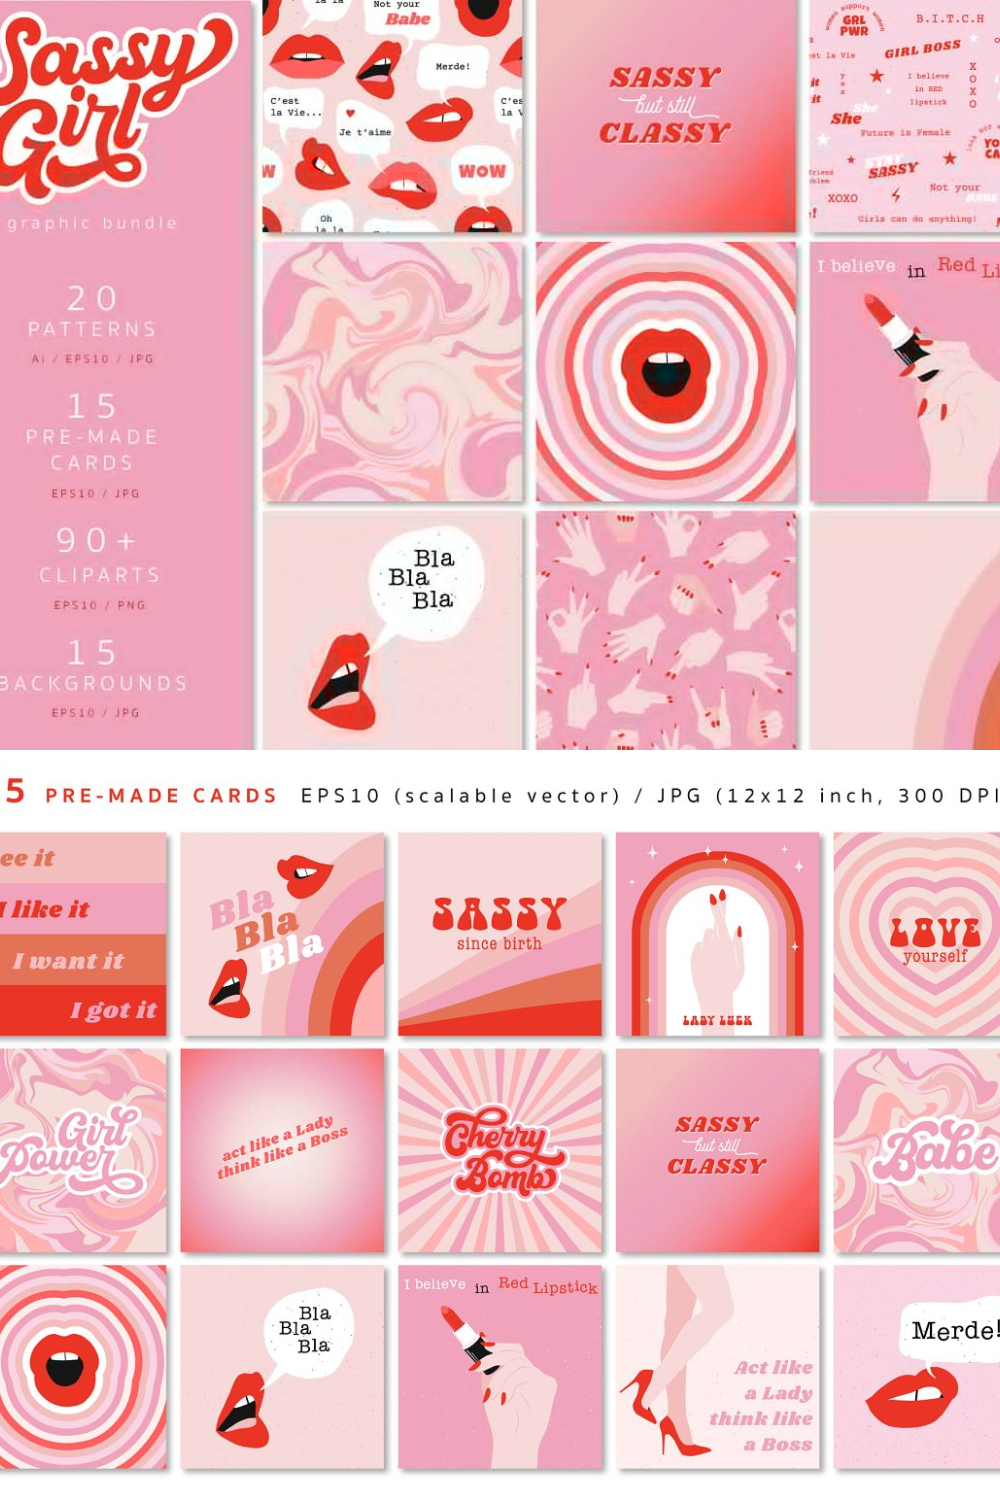 Sassy Girl Power Clipart Pattern - Pinterest.